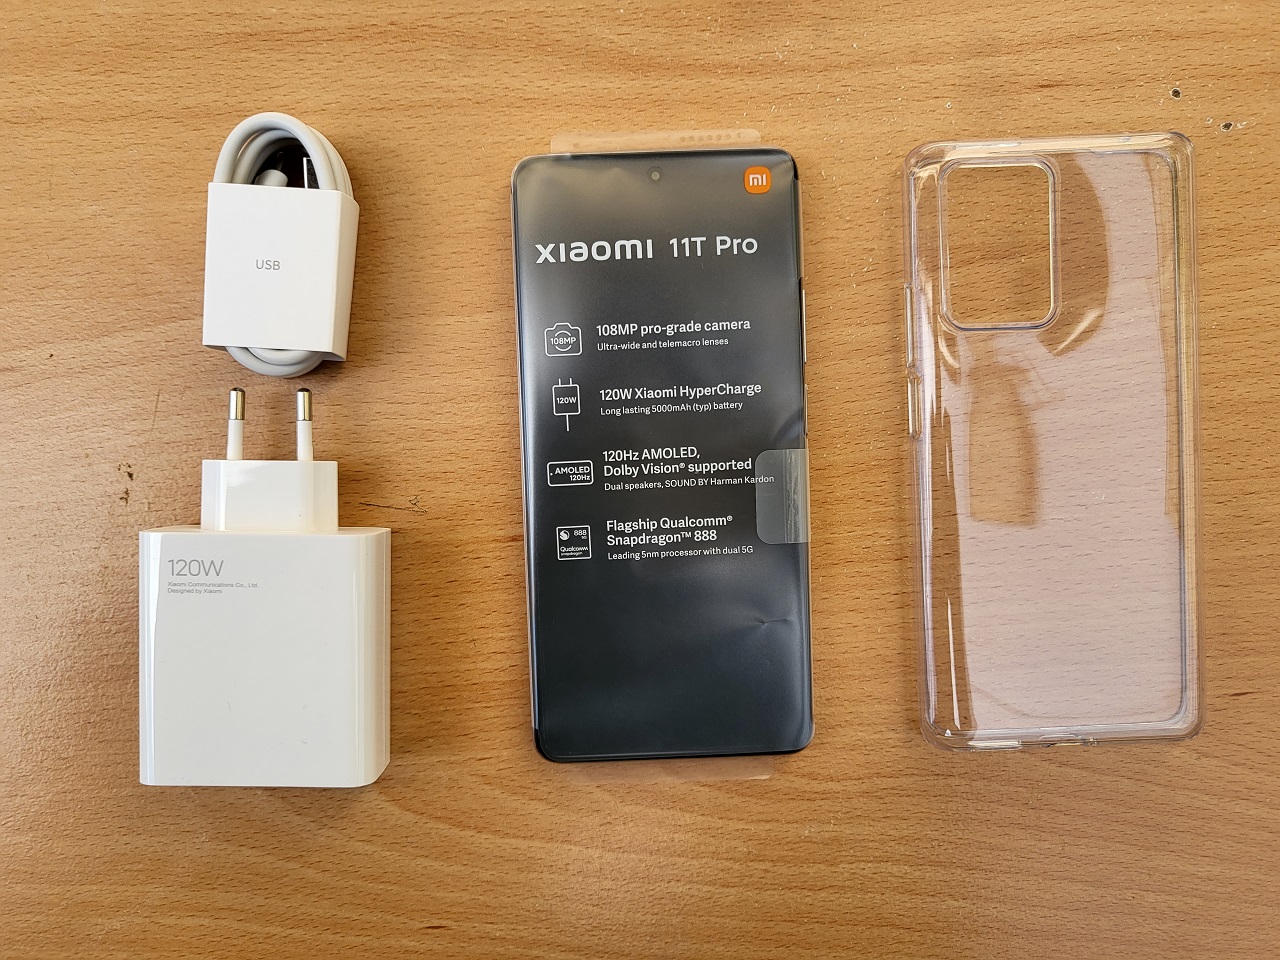 Xiaomi 11T Pro accessories